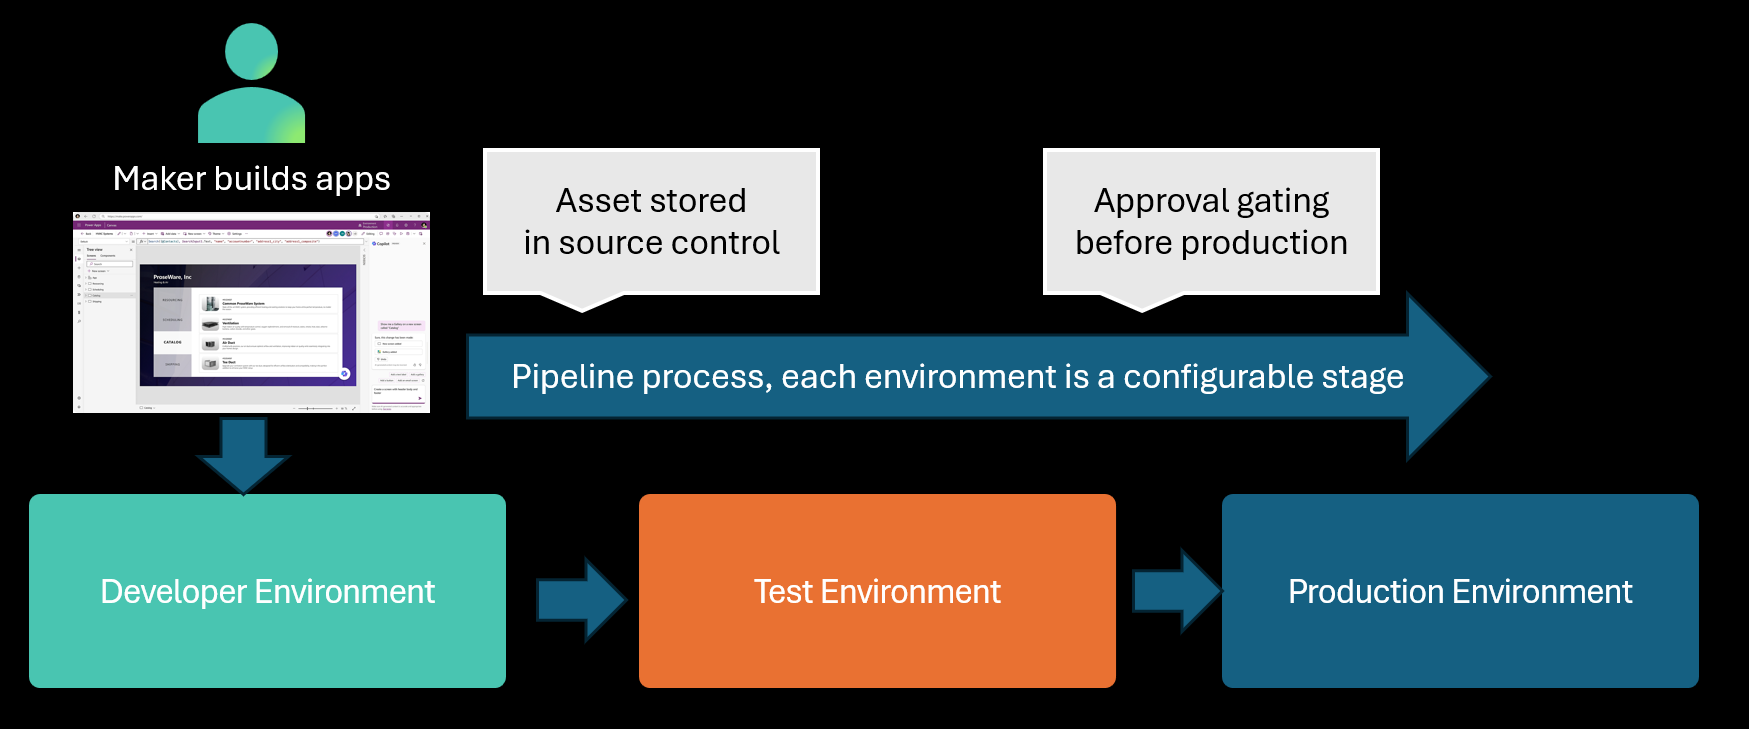 ソース管理に保存されている資産を開発からテスト、本番まで自動的に促進するパイプラインを示す図